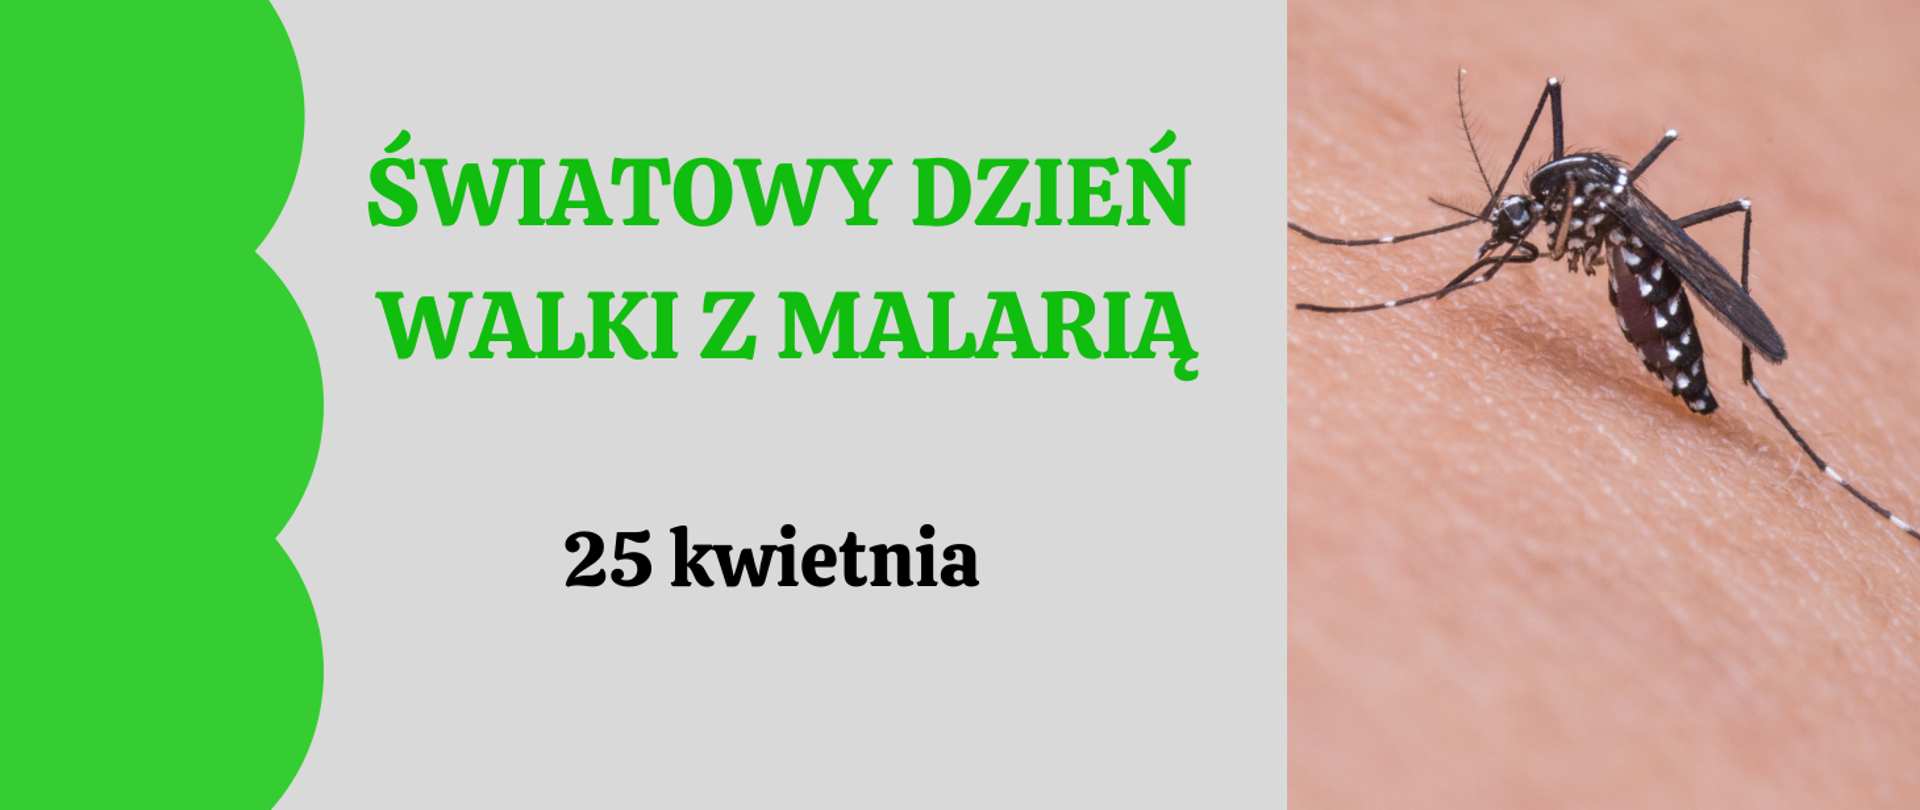 Z lewej strony napis: Światowy Dzień Walki z Malarią. 25 kwietnia. Z prawej strony zdjęcie komara na skórze człowieka.